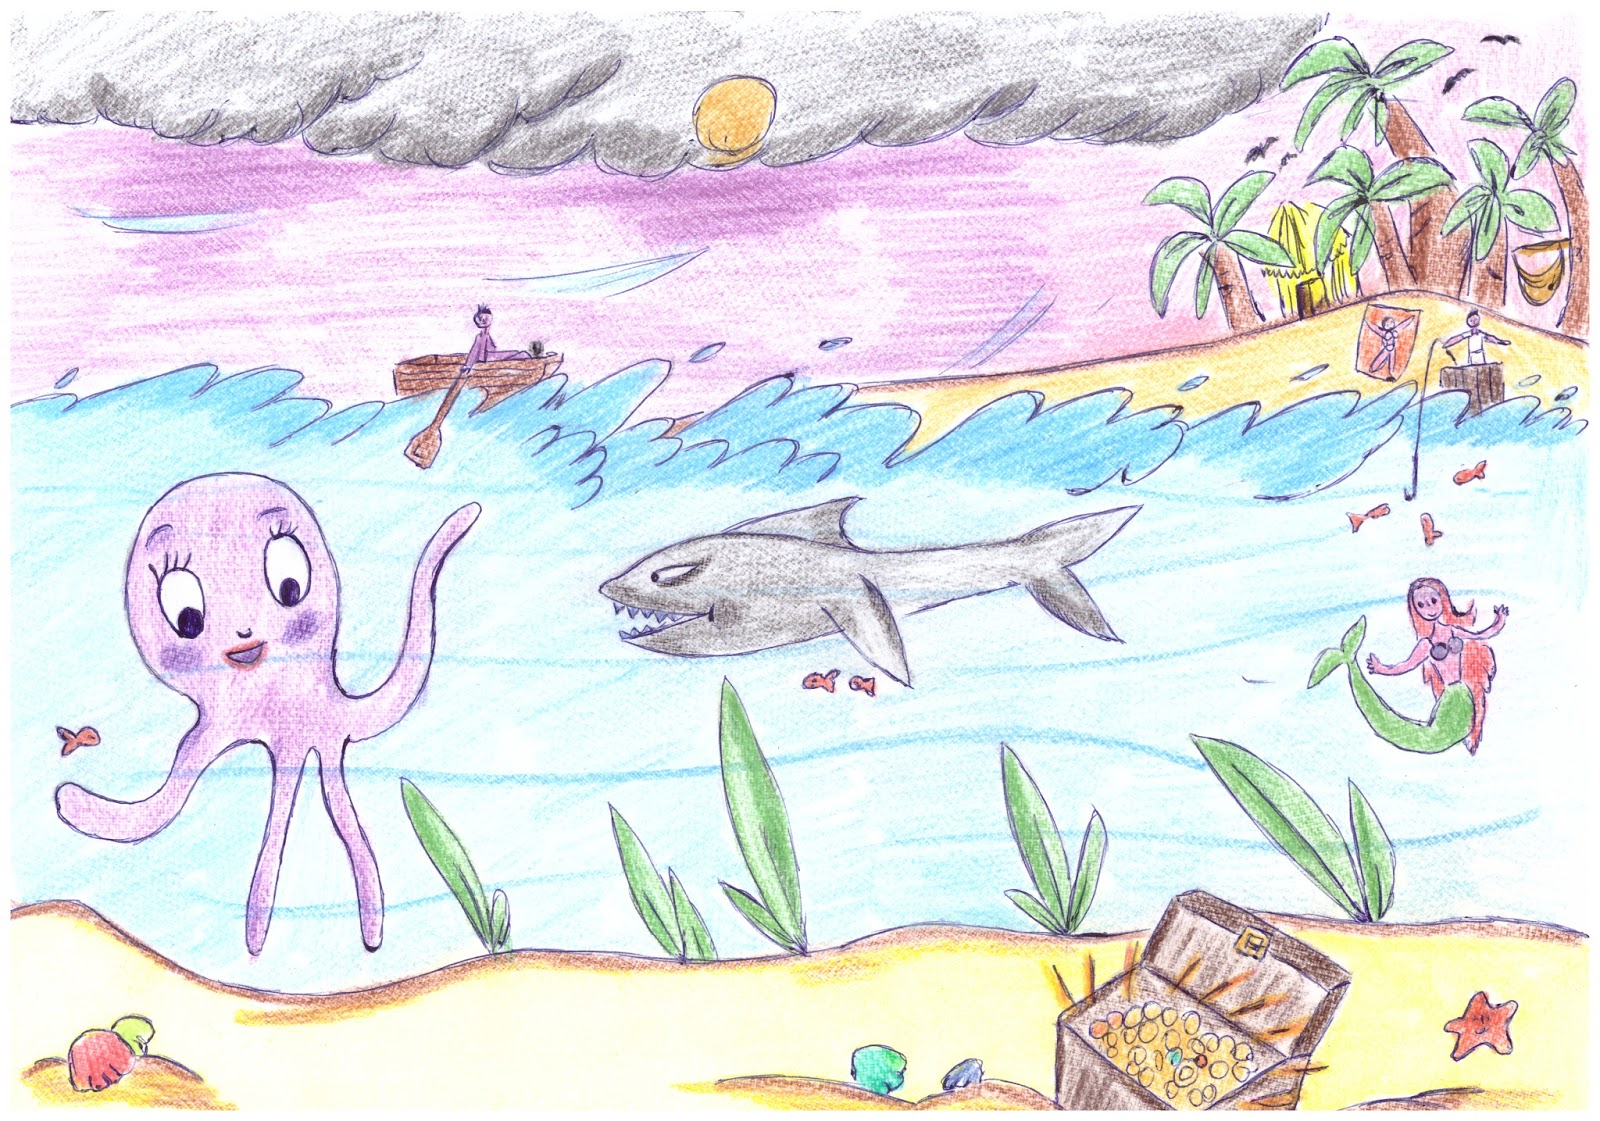 Questo ¨ il suo disegno libero ha scelto un paesaggio marino ascoltiamo ci² che Sara desidera unicare attraverso forme tratti colori personaggi